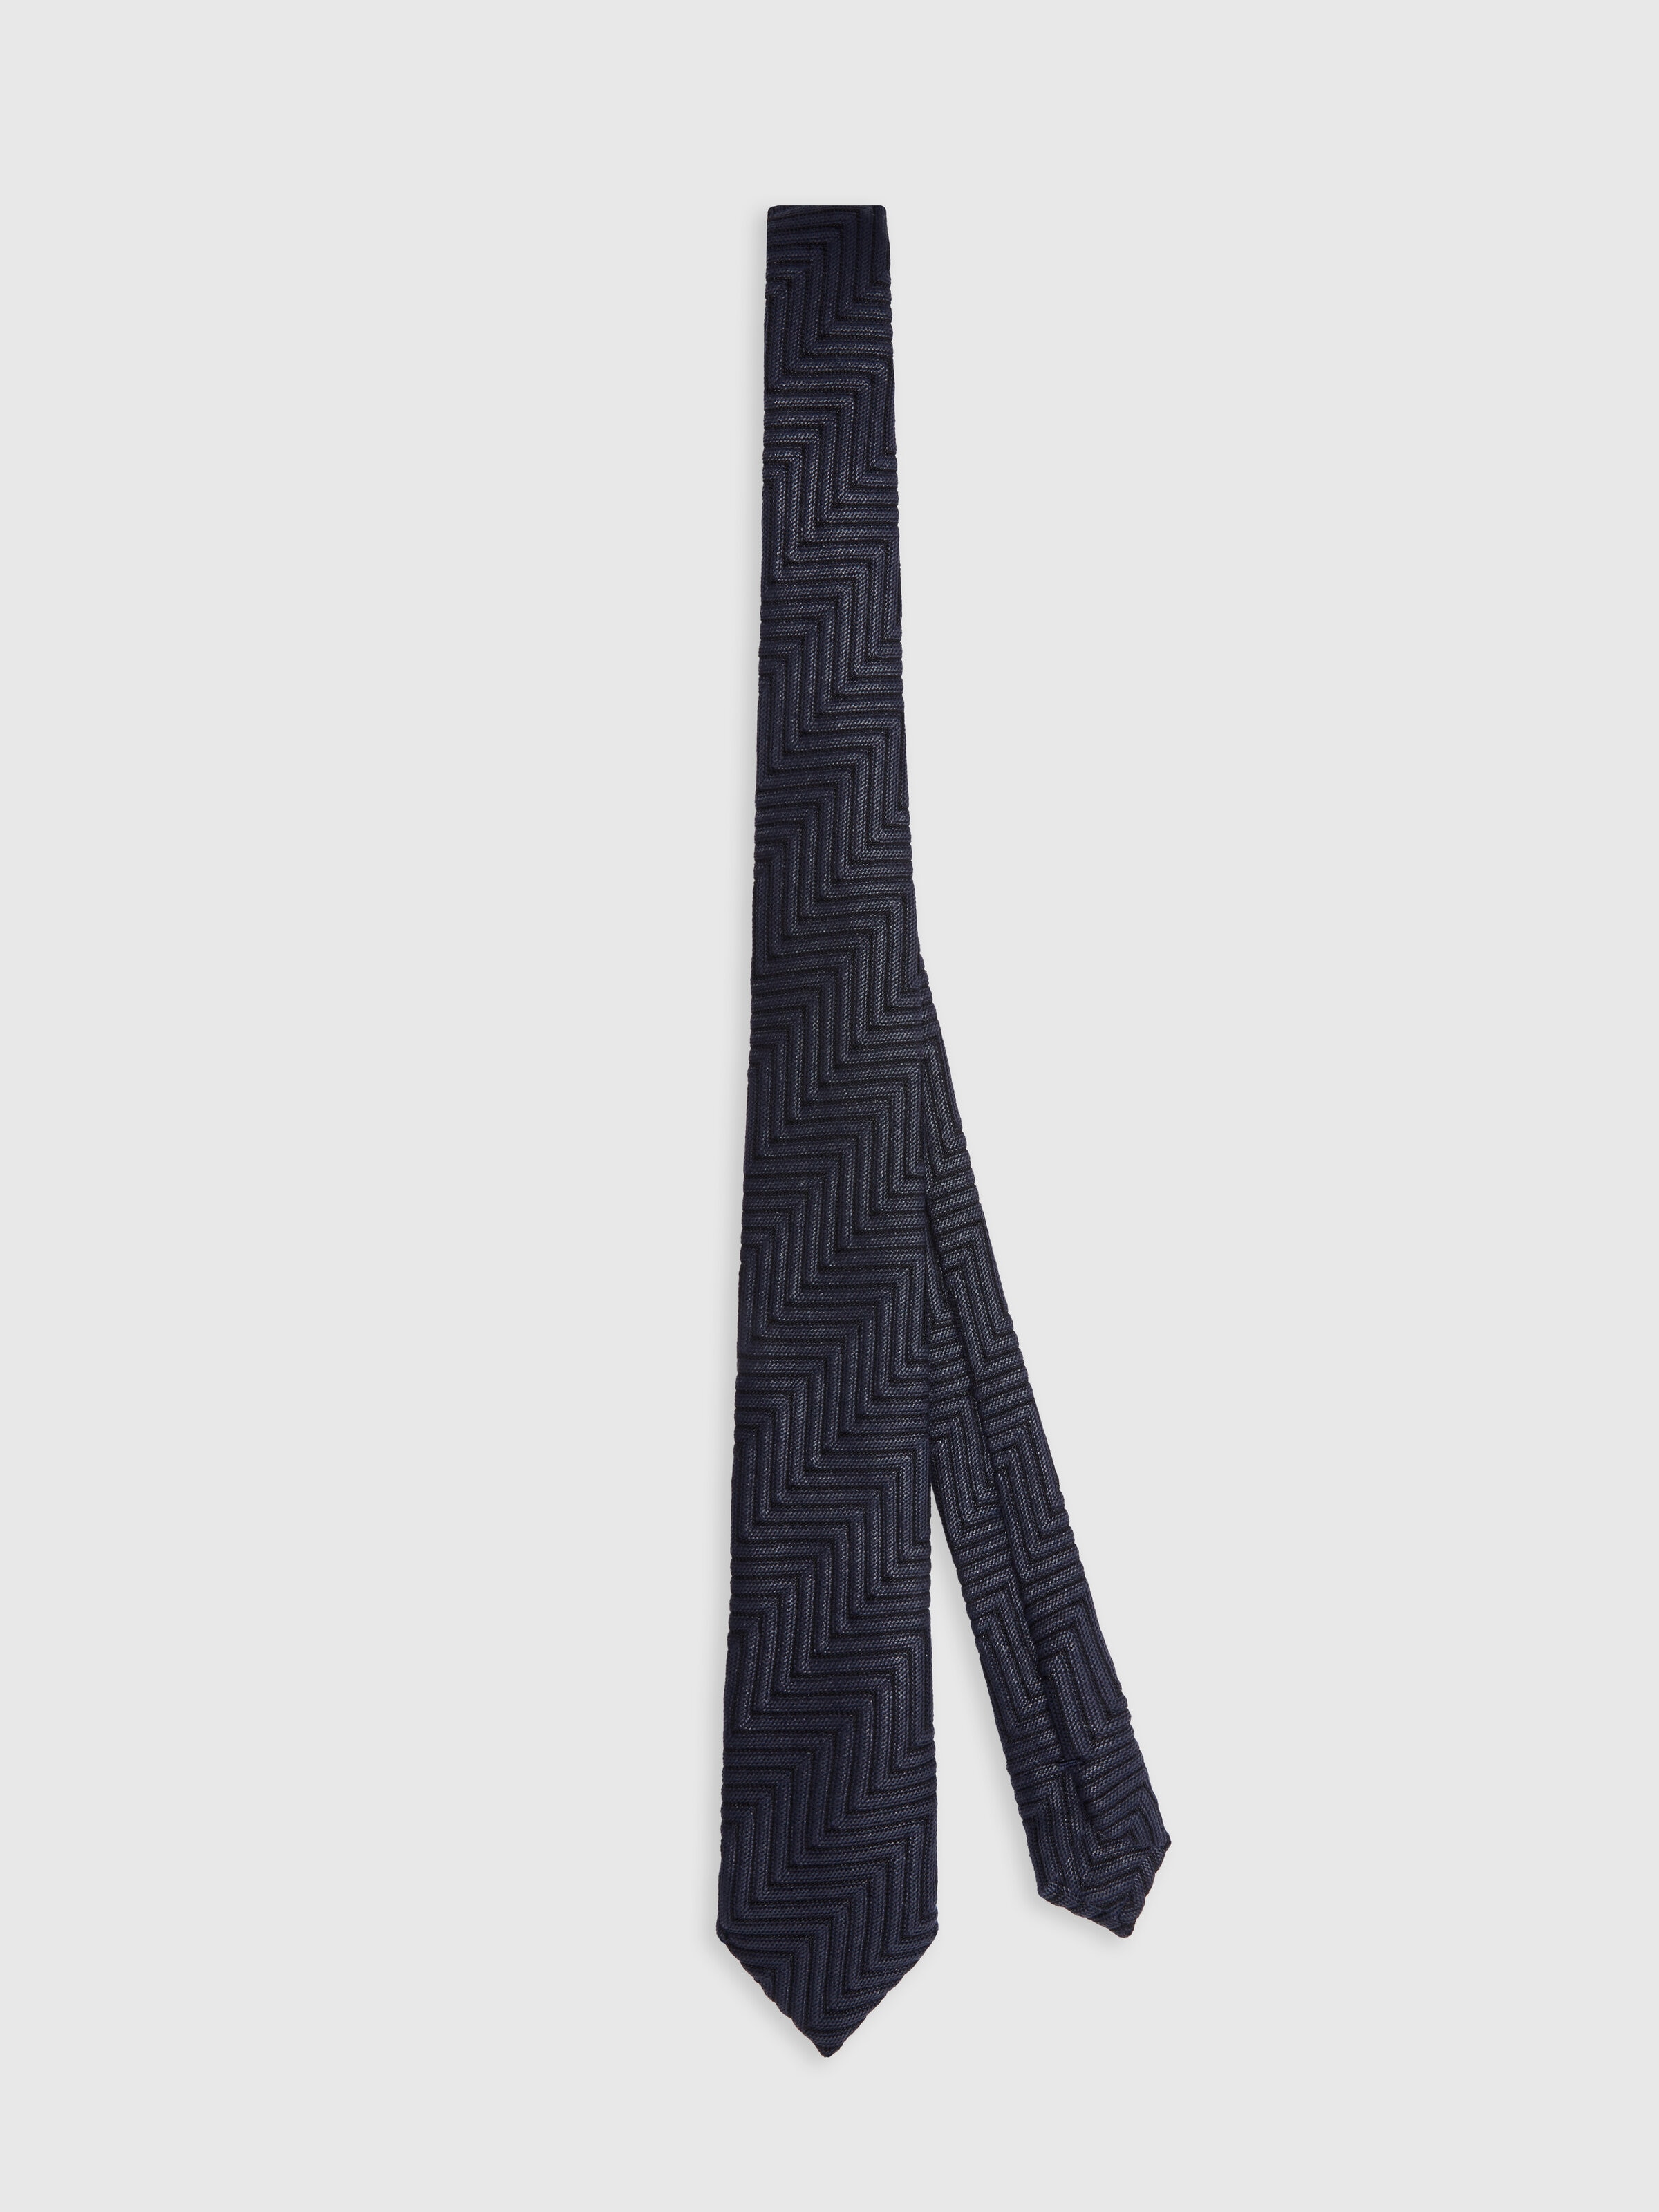 Corbata de algodón y viscosa con motivo de espigas, Multicolor  - 0